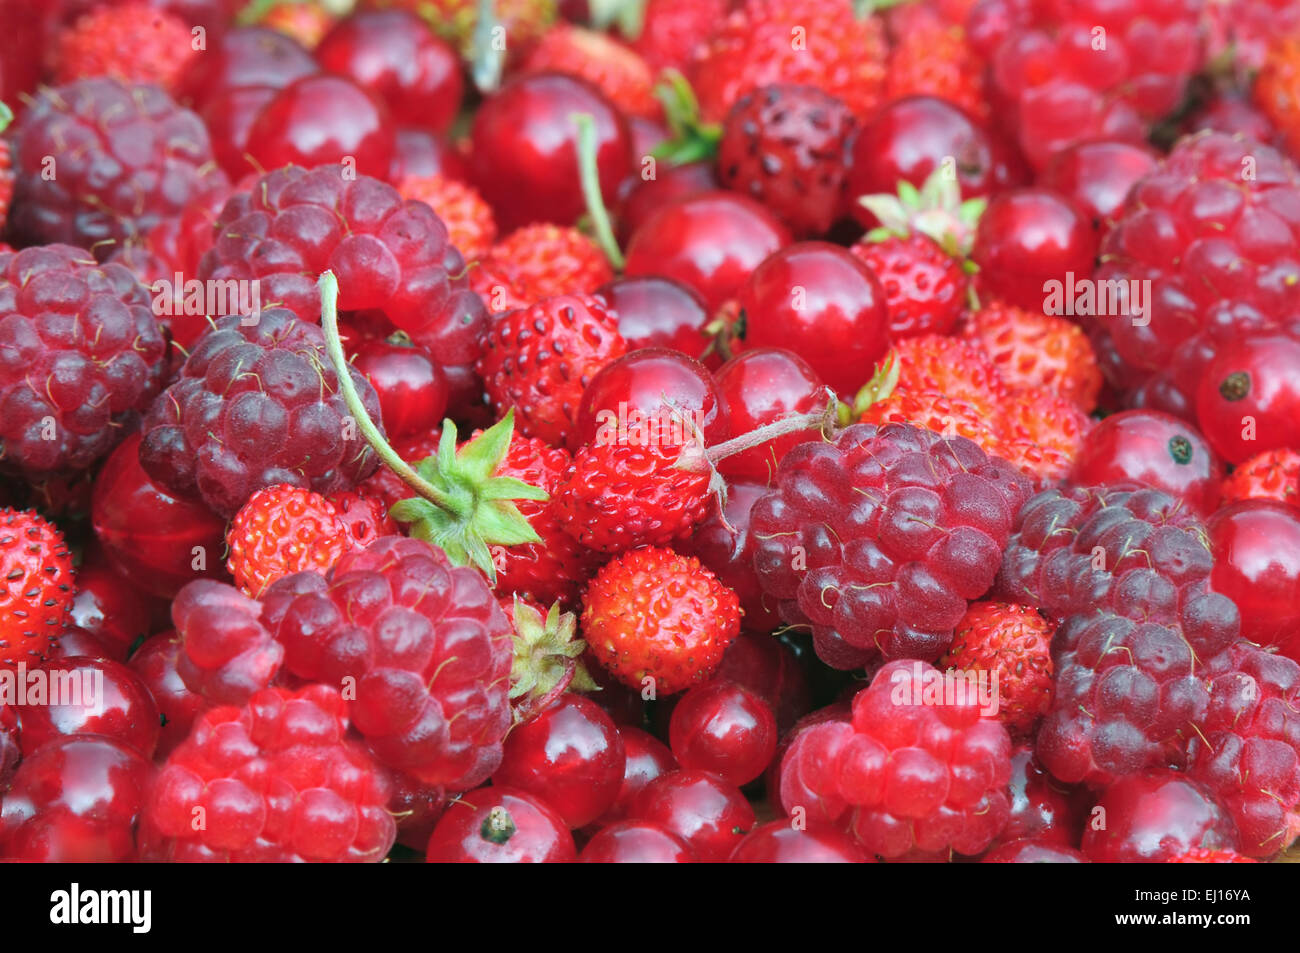 Photo of wild strawberries, raspberries and ribes Stock Photo